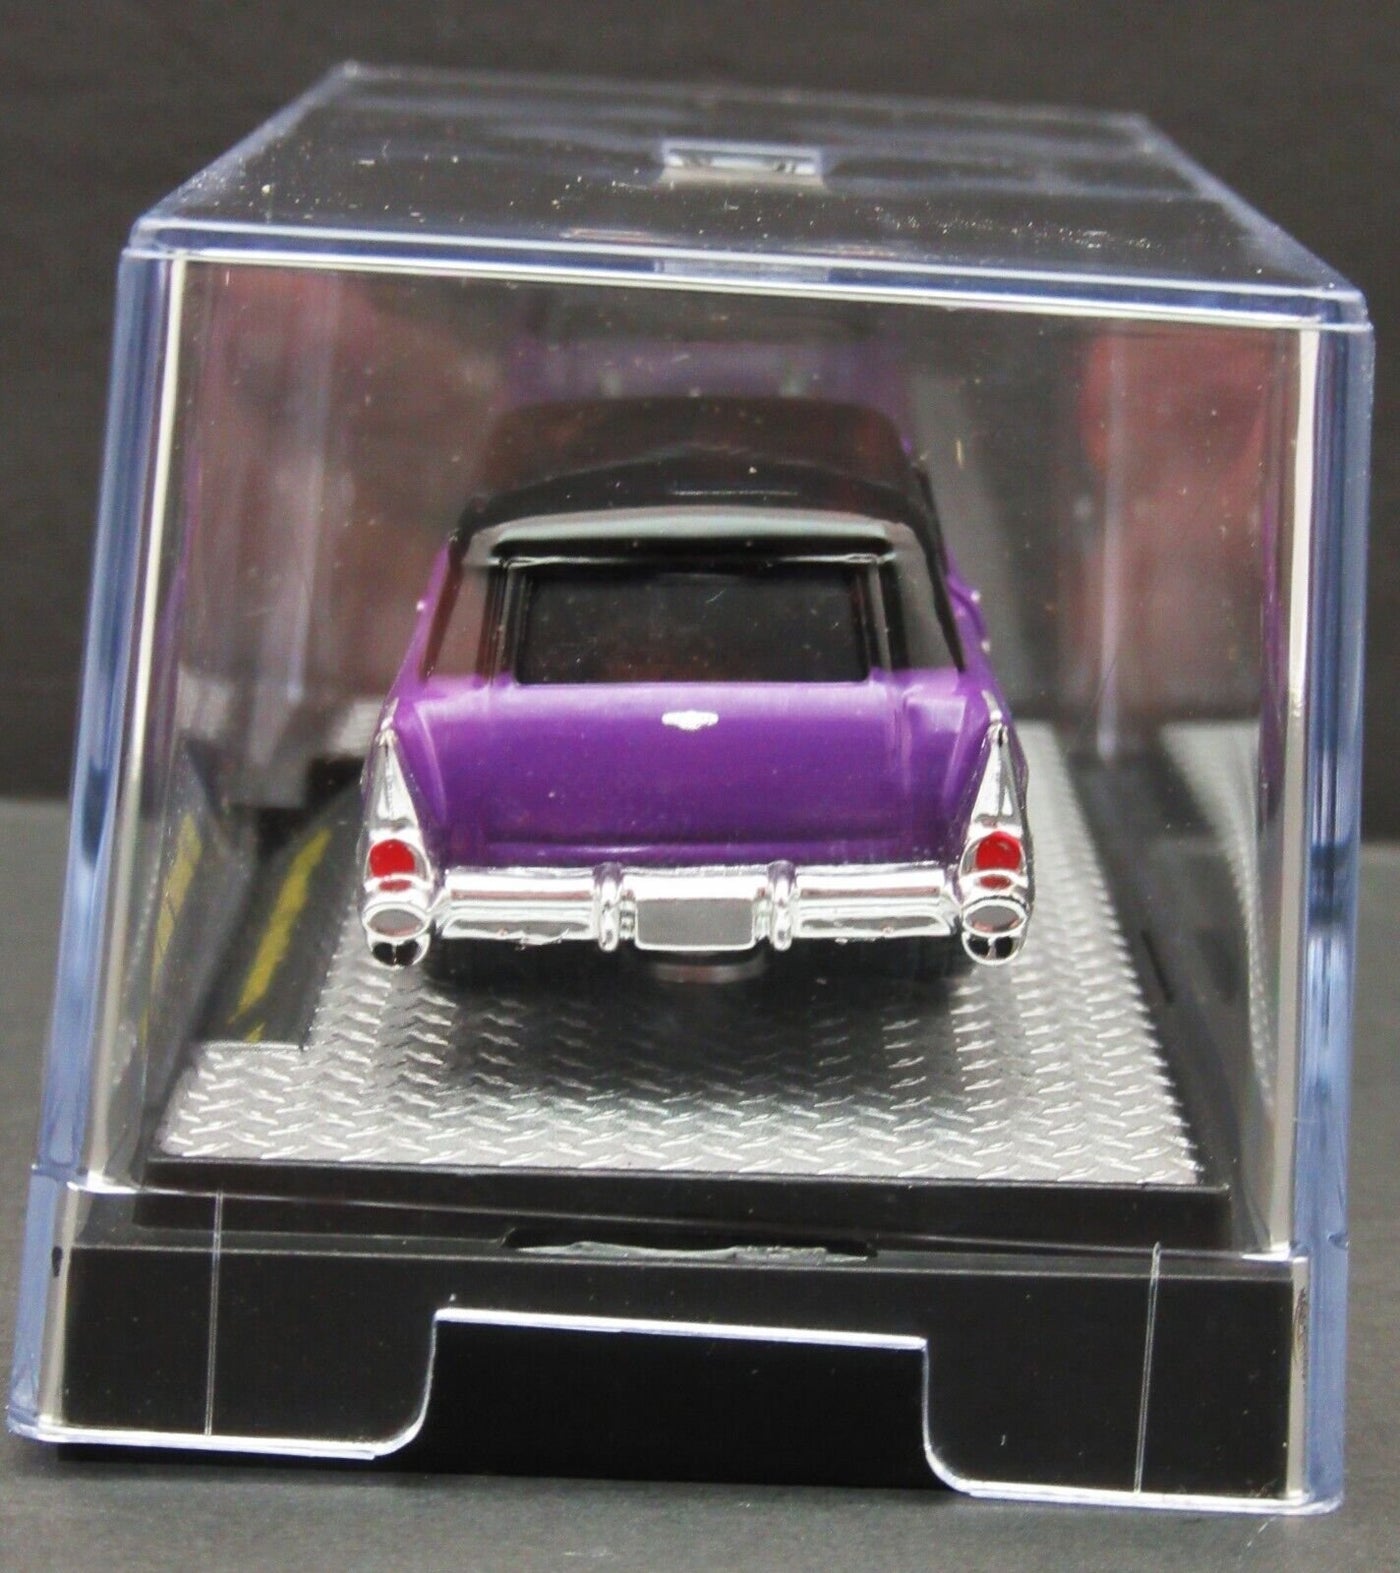 M2 Details ~ 1957 Chevrolet Sedan Delivery ~ Purple & Black ~ Die Cast Car